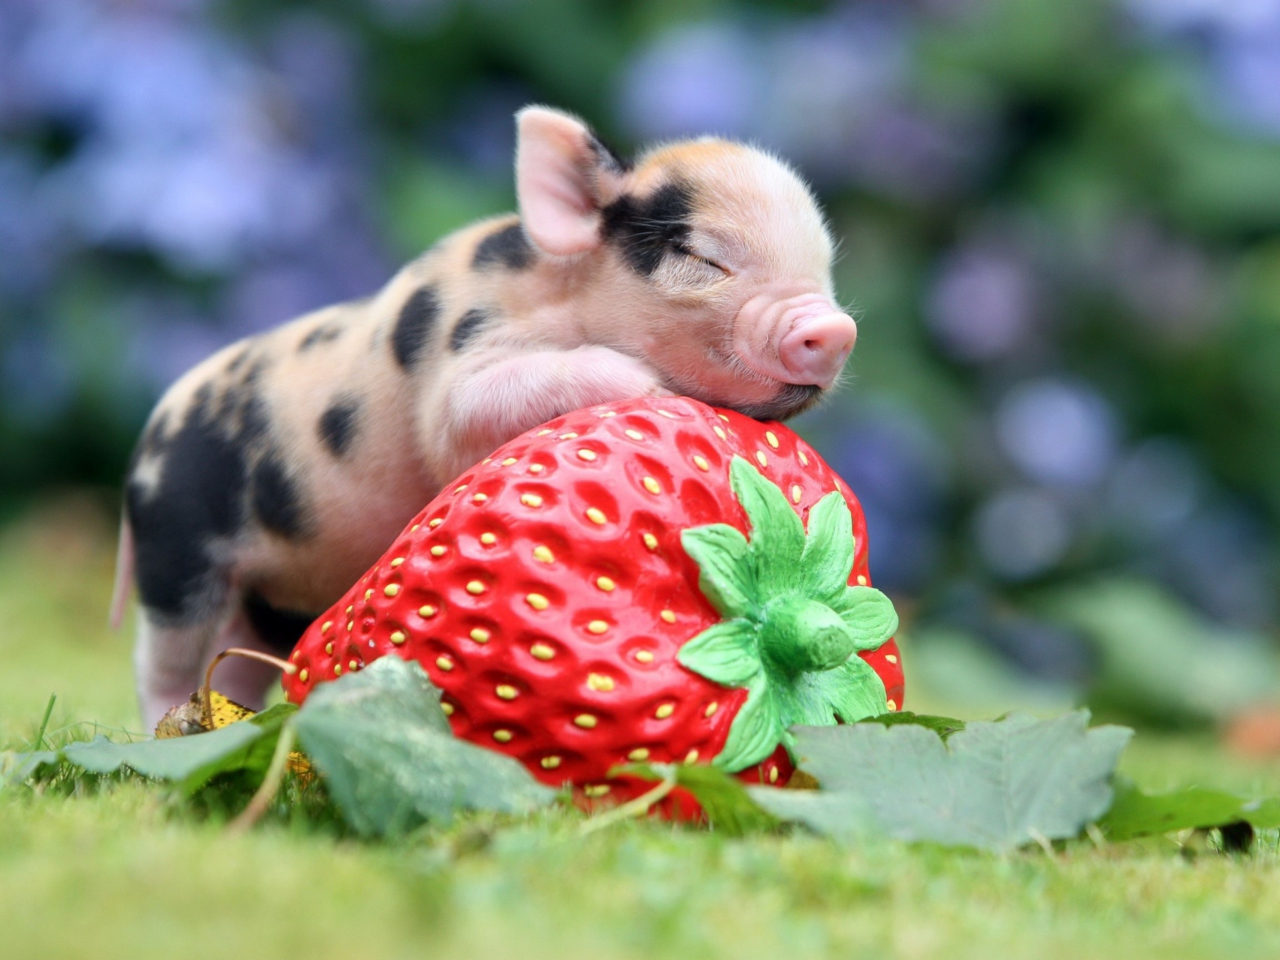 Sfondi Cute Little Piglet And Strawberry 1280x960